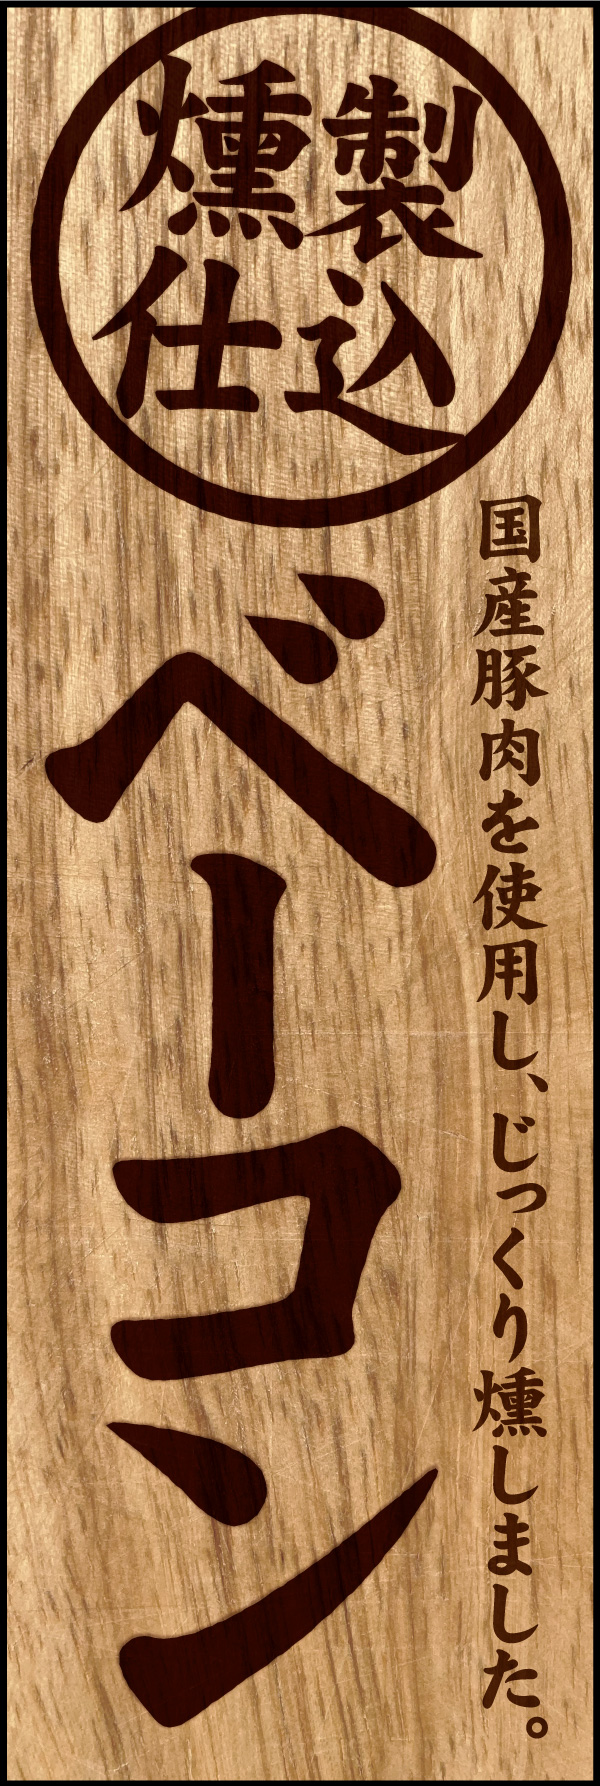 ベーコン 01 「ベーコン」の幟です。木材に焼印された文字をモチーフに、じっくり燻製された手作りベーコンをイメージしてデザインしました。(Y.M)